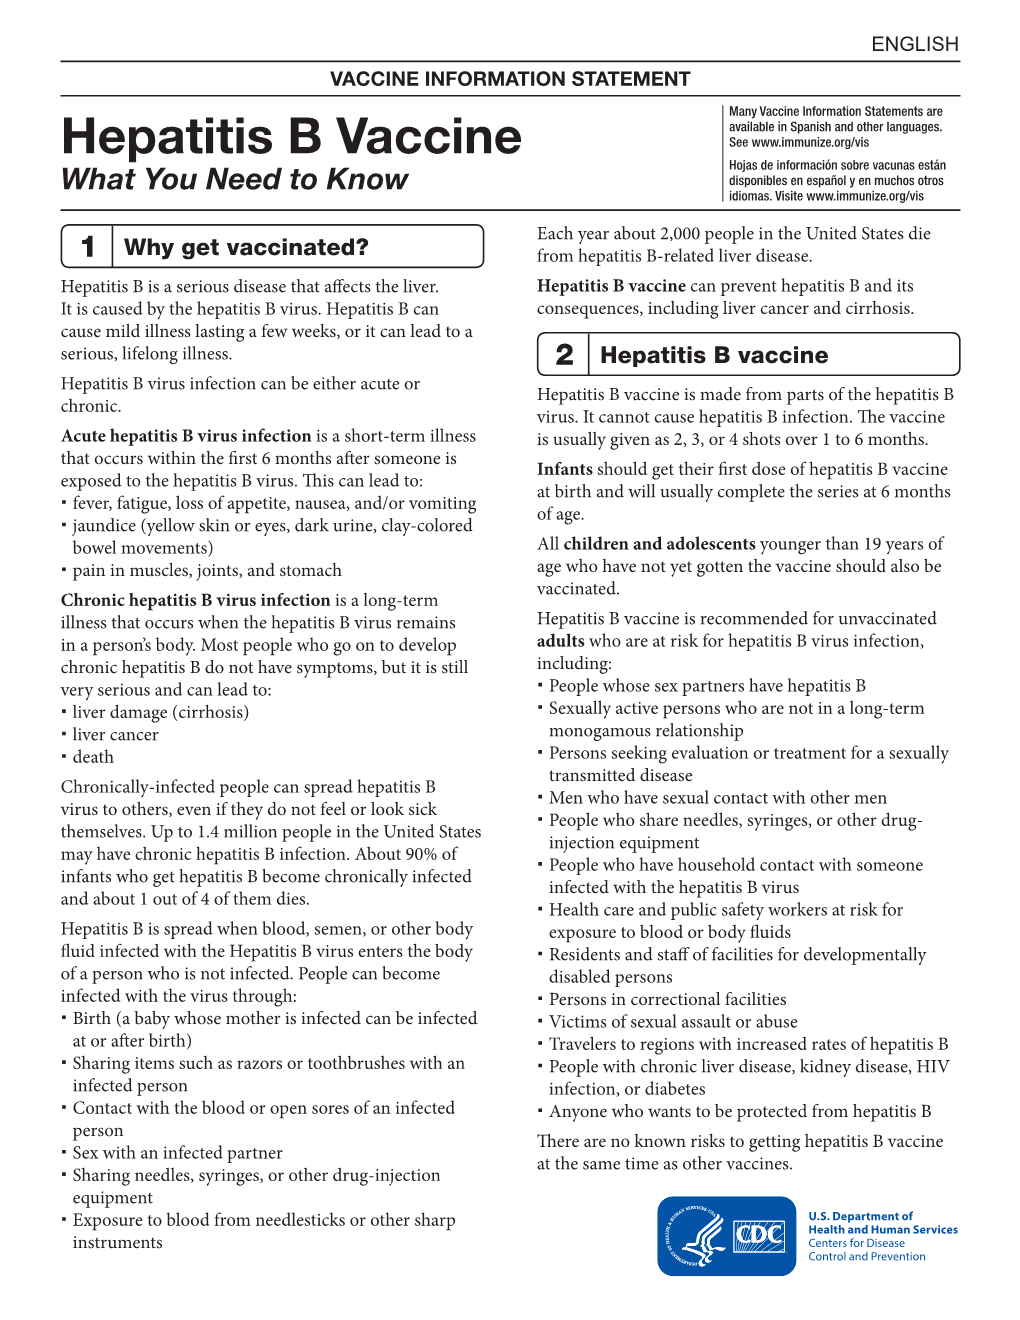 Hepatitis B Vaccine Information Statement (VIS)